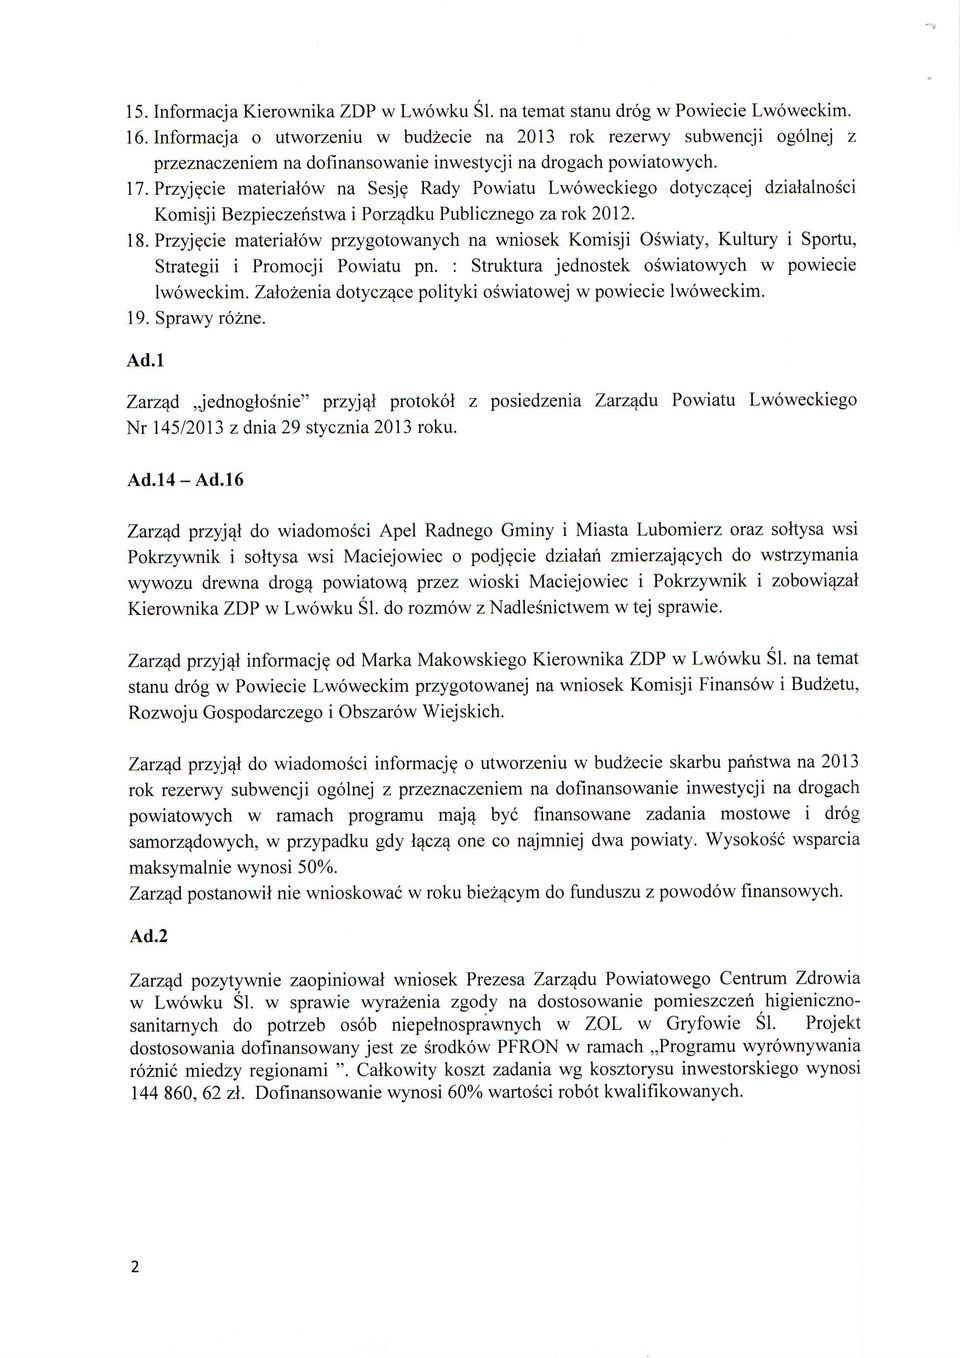 przyjecie material6w na Sesjg Rady Powiatu Lw6weckiego dotyczecej dzialalnosci Komisj i Bezpieczehstwa i Porz4dku Publiczneg o za r ok 2012. 18.